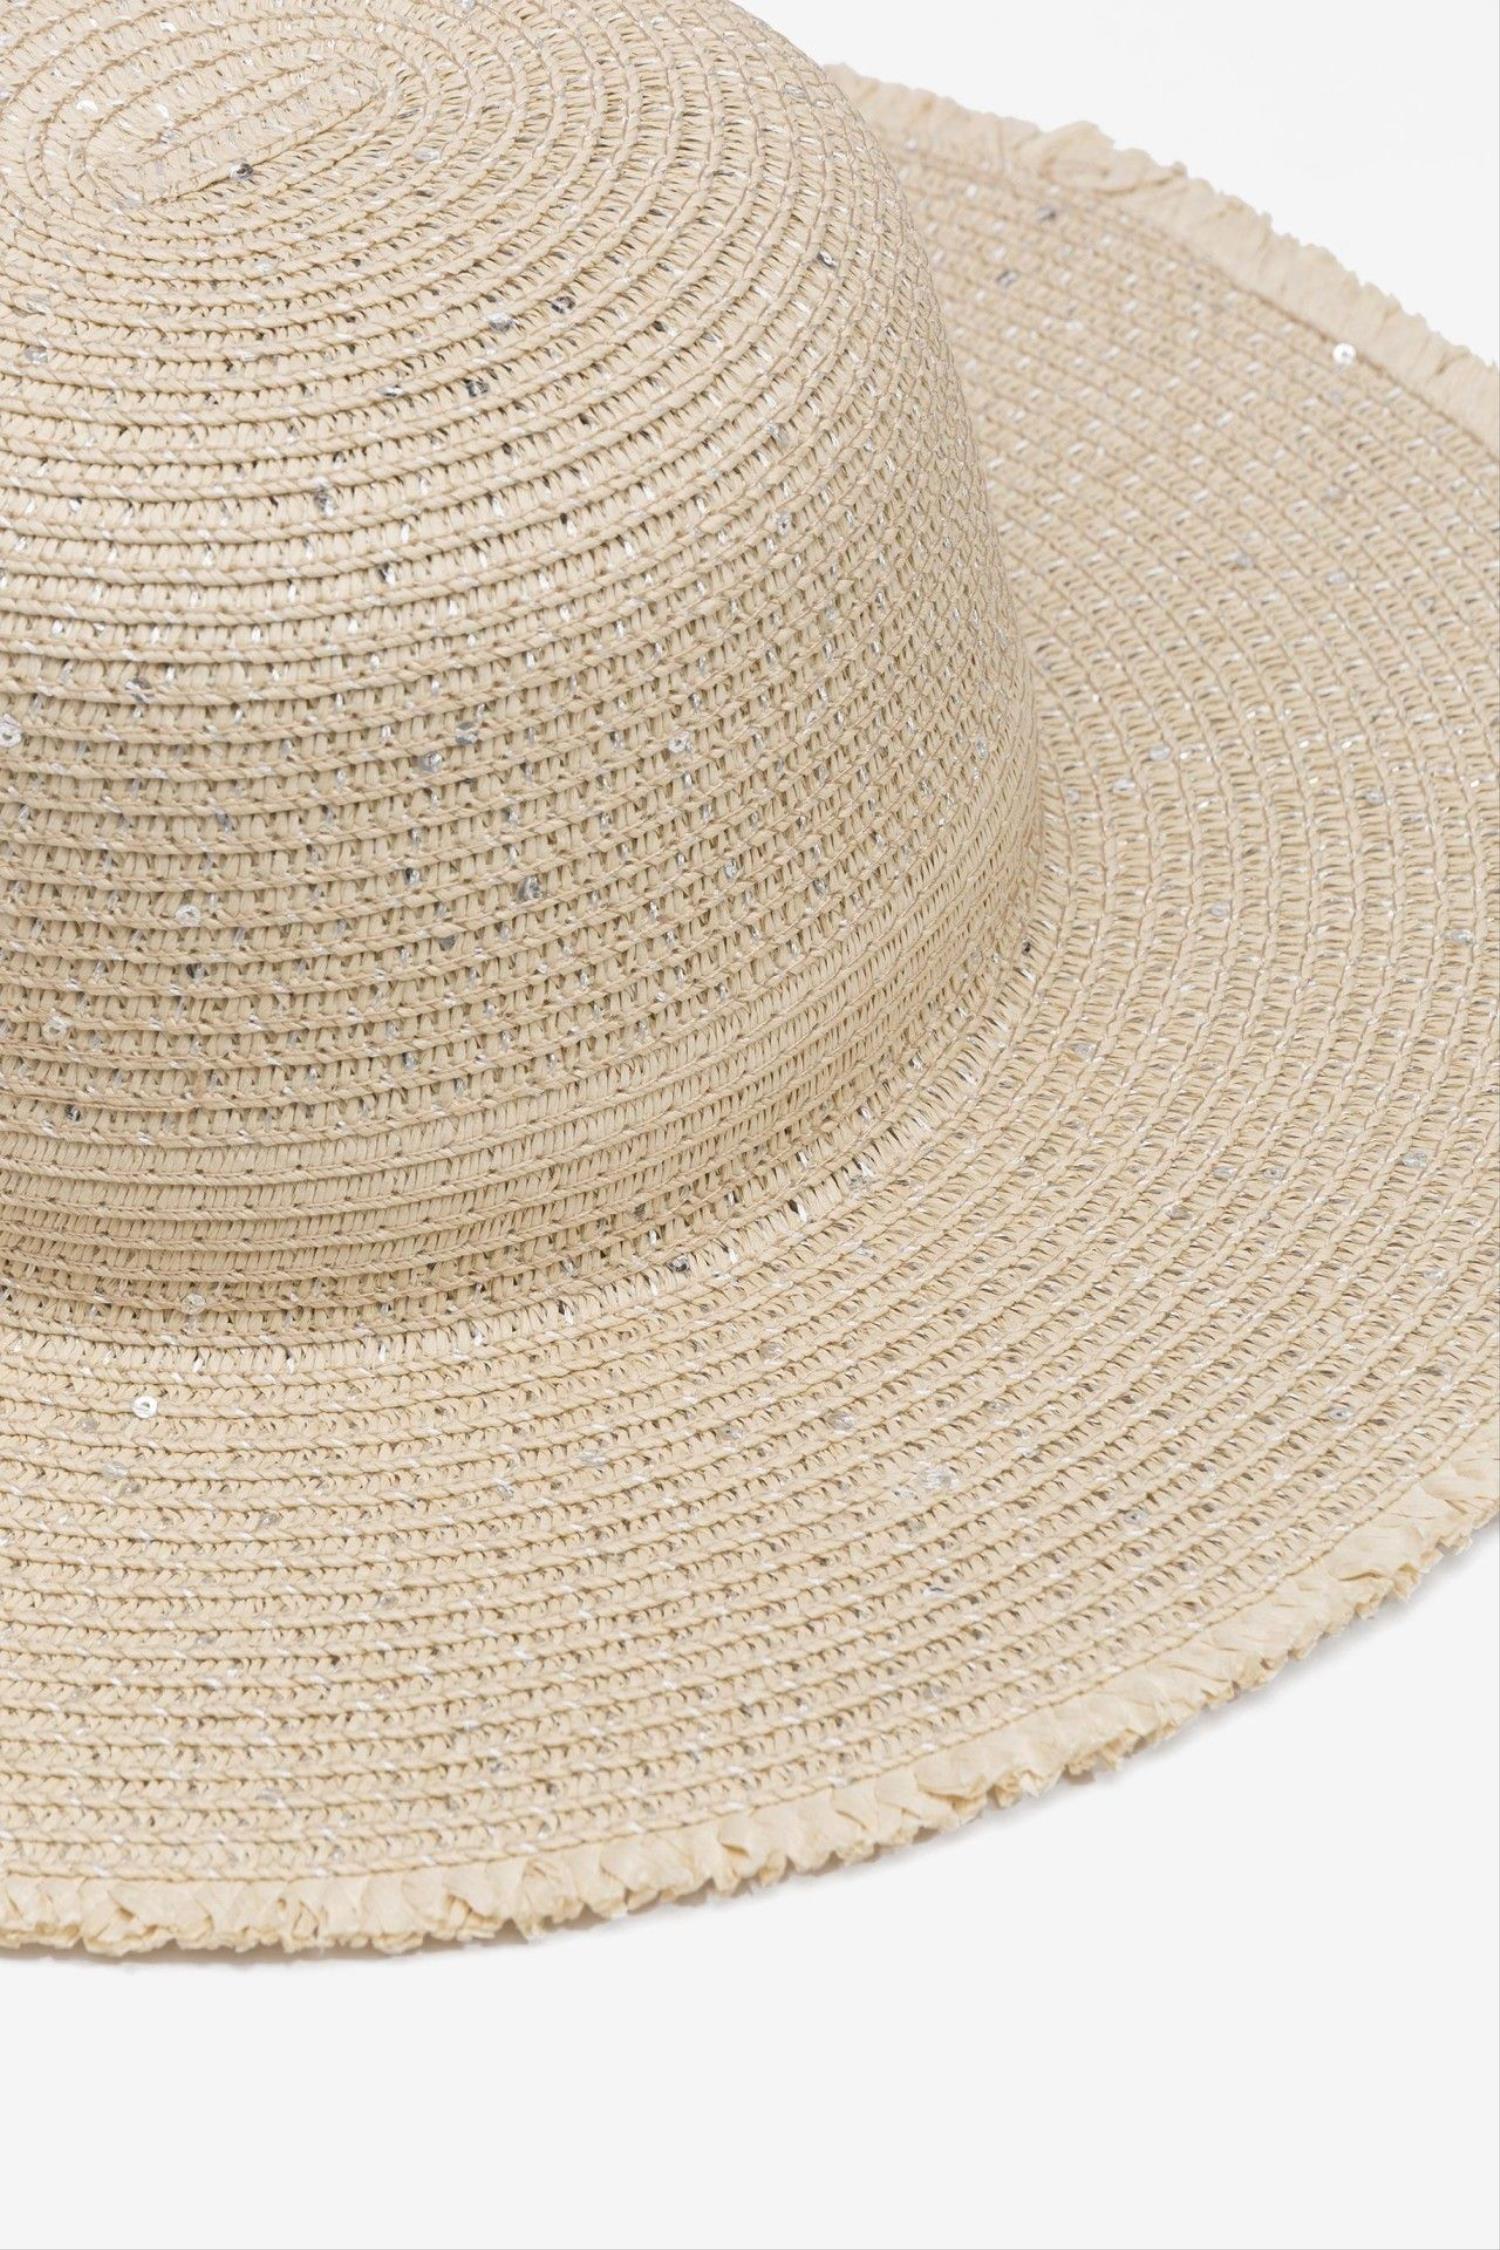 Sombrero en color beige con lentejuelas la marca Vilanova con referencia 71007813_150.